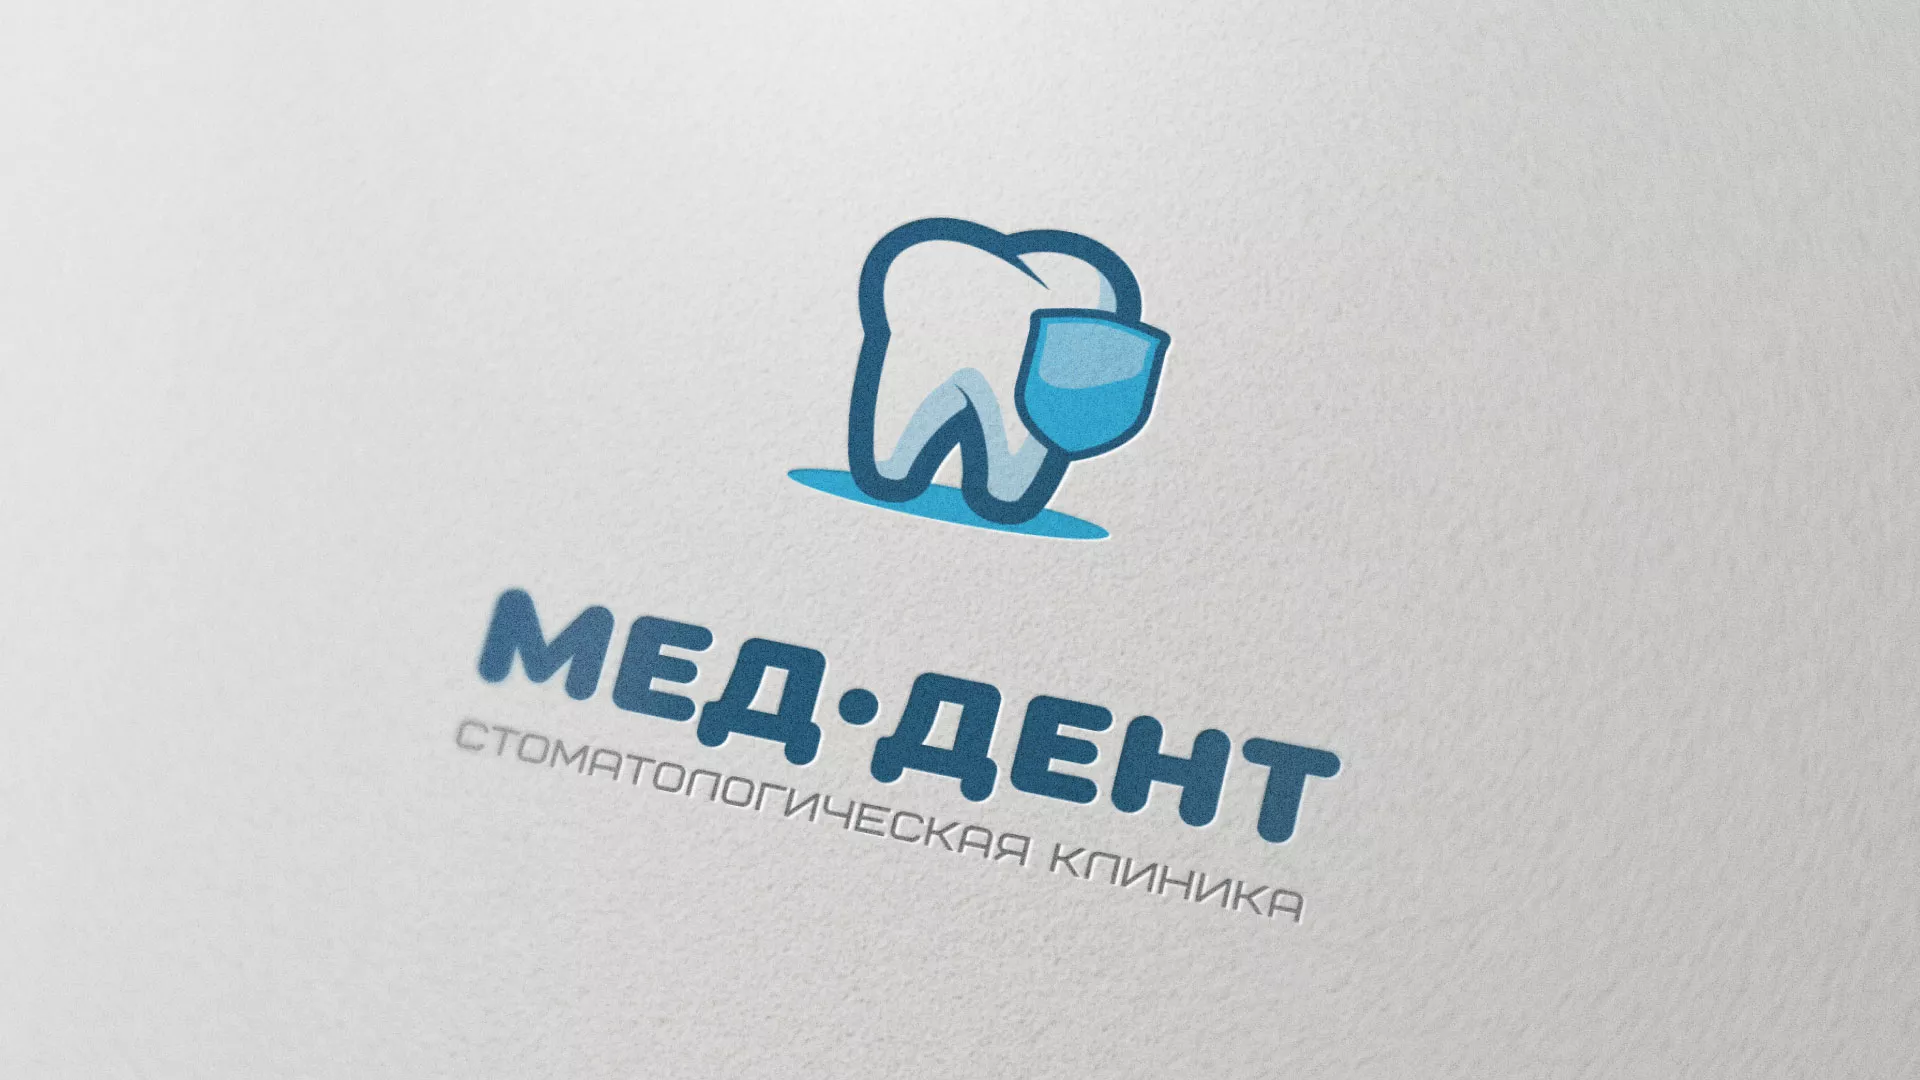 Разработка логотипа стоматологической клиники «МЕД-ДЕНТ» в Грязовце